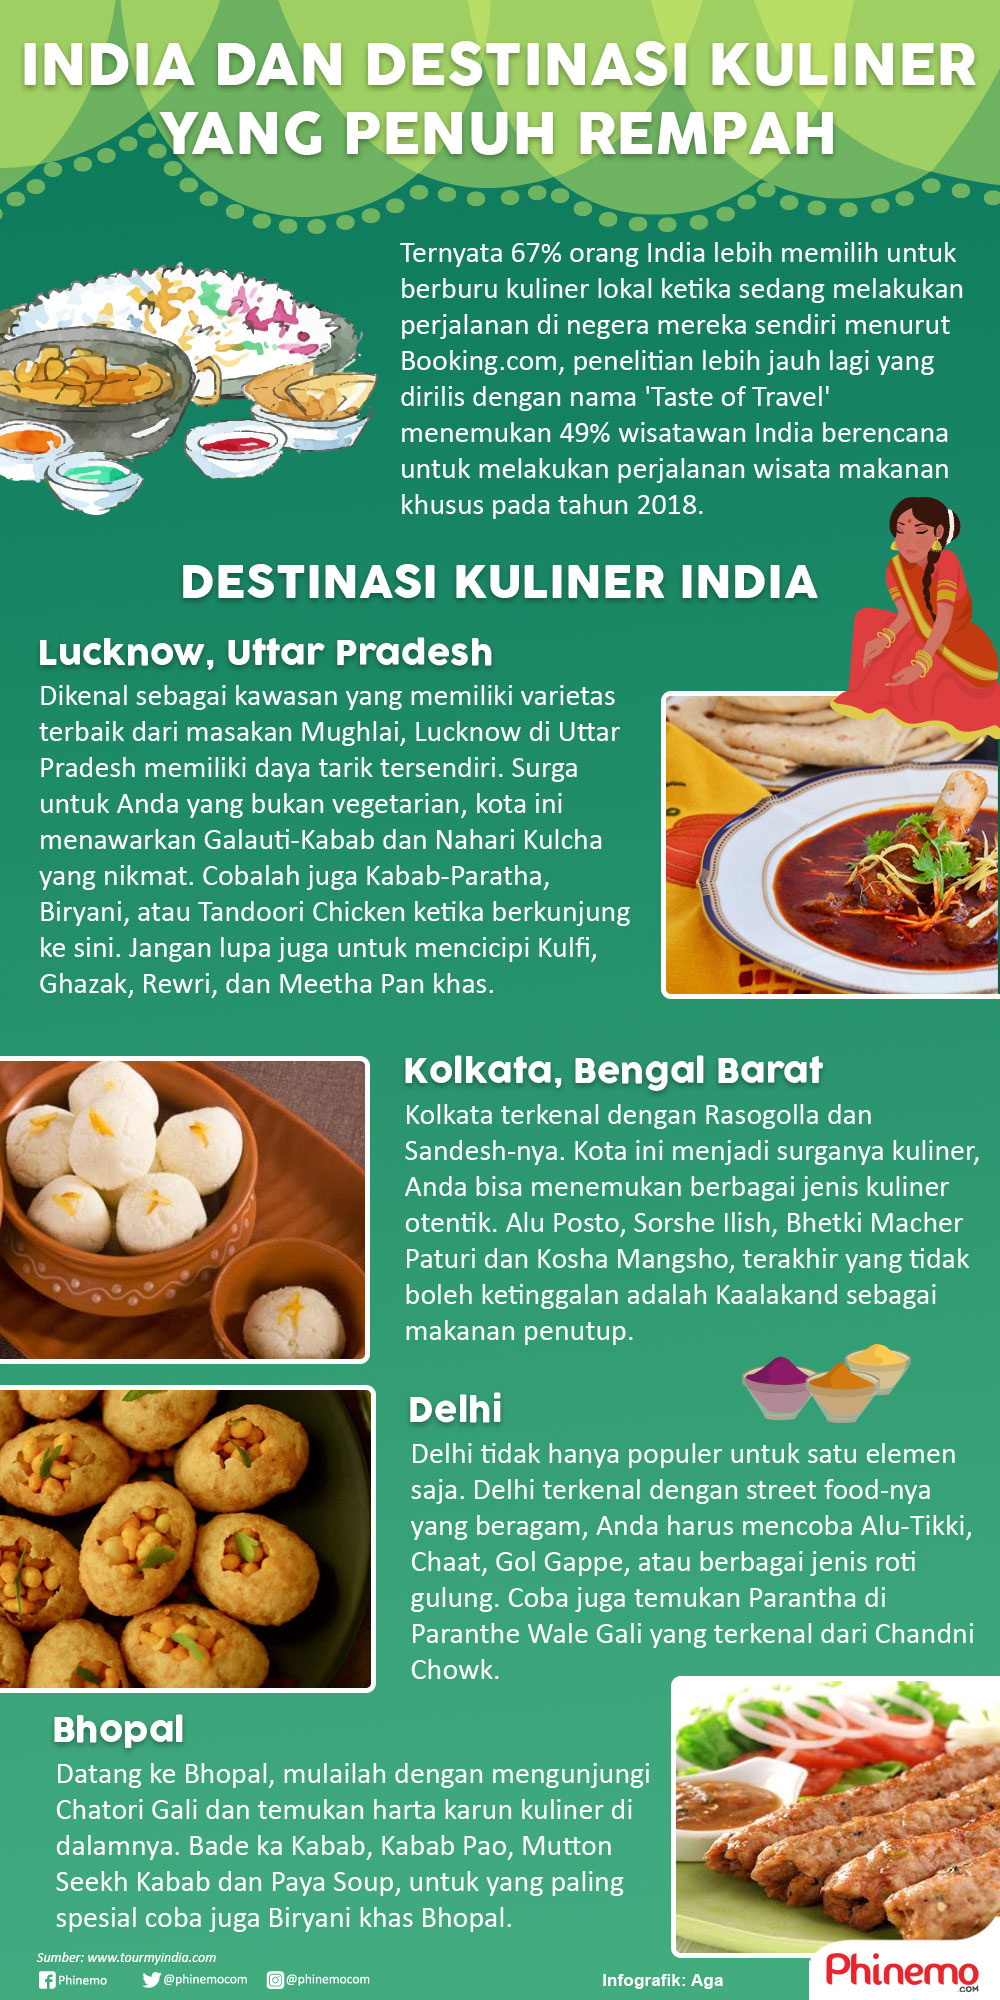 Infografik India, Destinasi Kuliner Penuh Rempah yang Siap Menggoyang Lidah